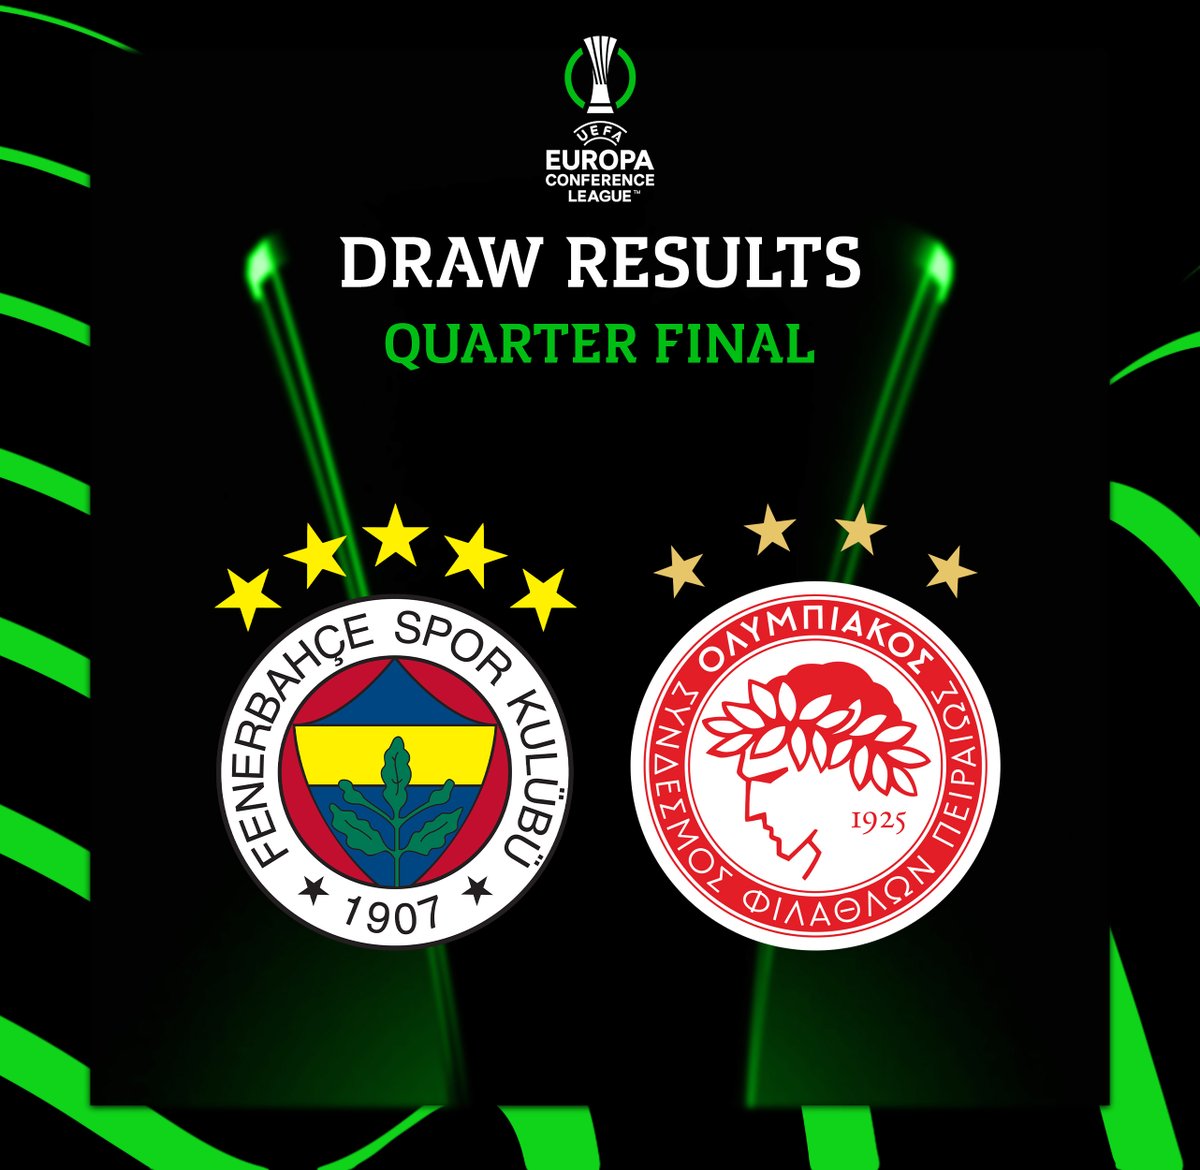 UEFA Konferans Ligi Çeyrek Final eşleşmesinde rakibimiz Olympiakos oldu. ✈️ İlk maç: 11 Nisan 🏟️ İkinci maç: 18 Nisan